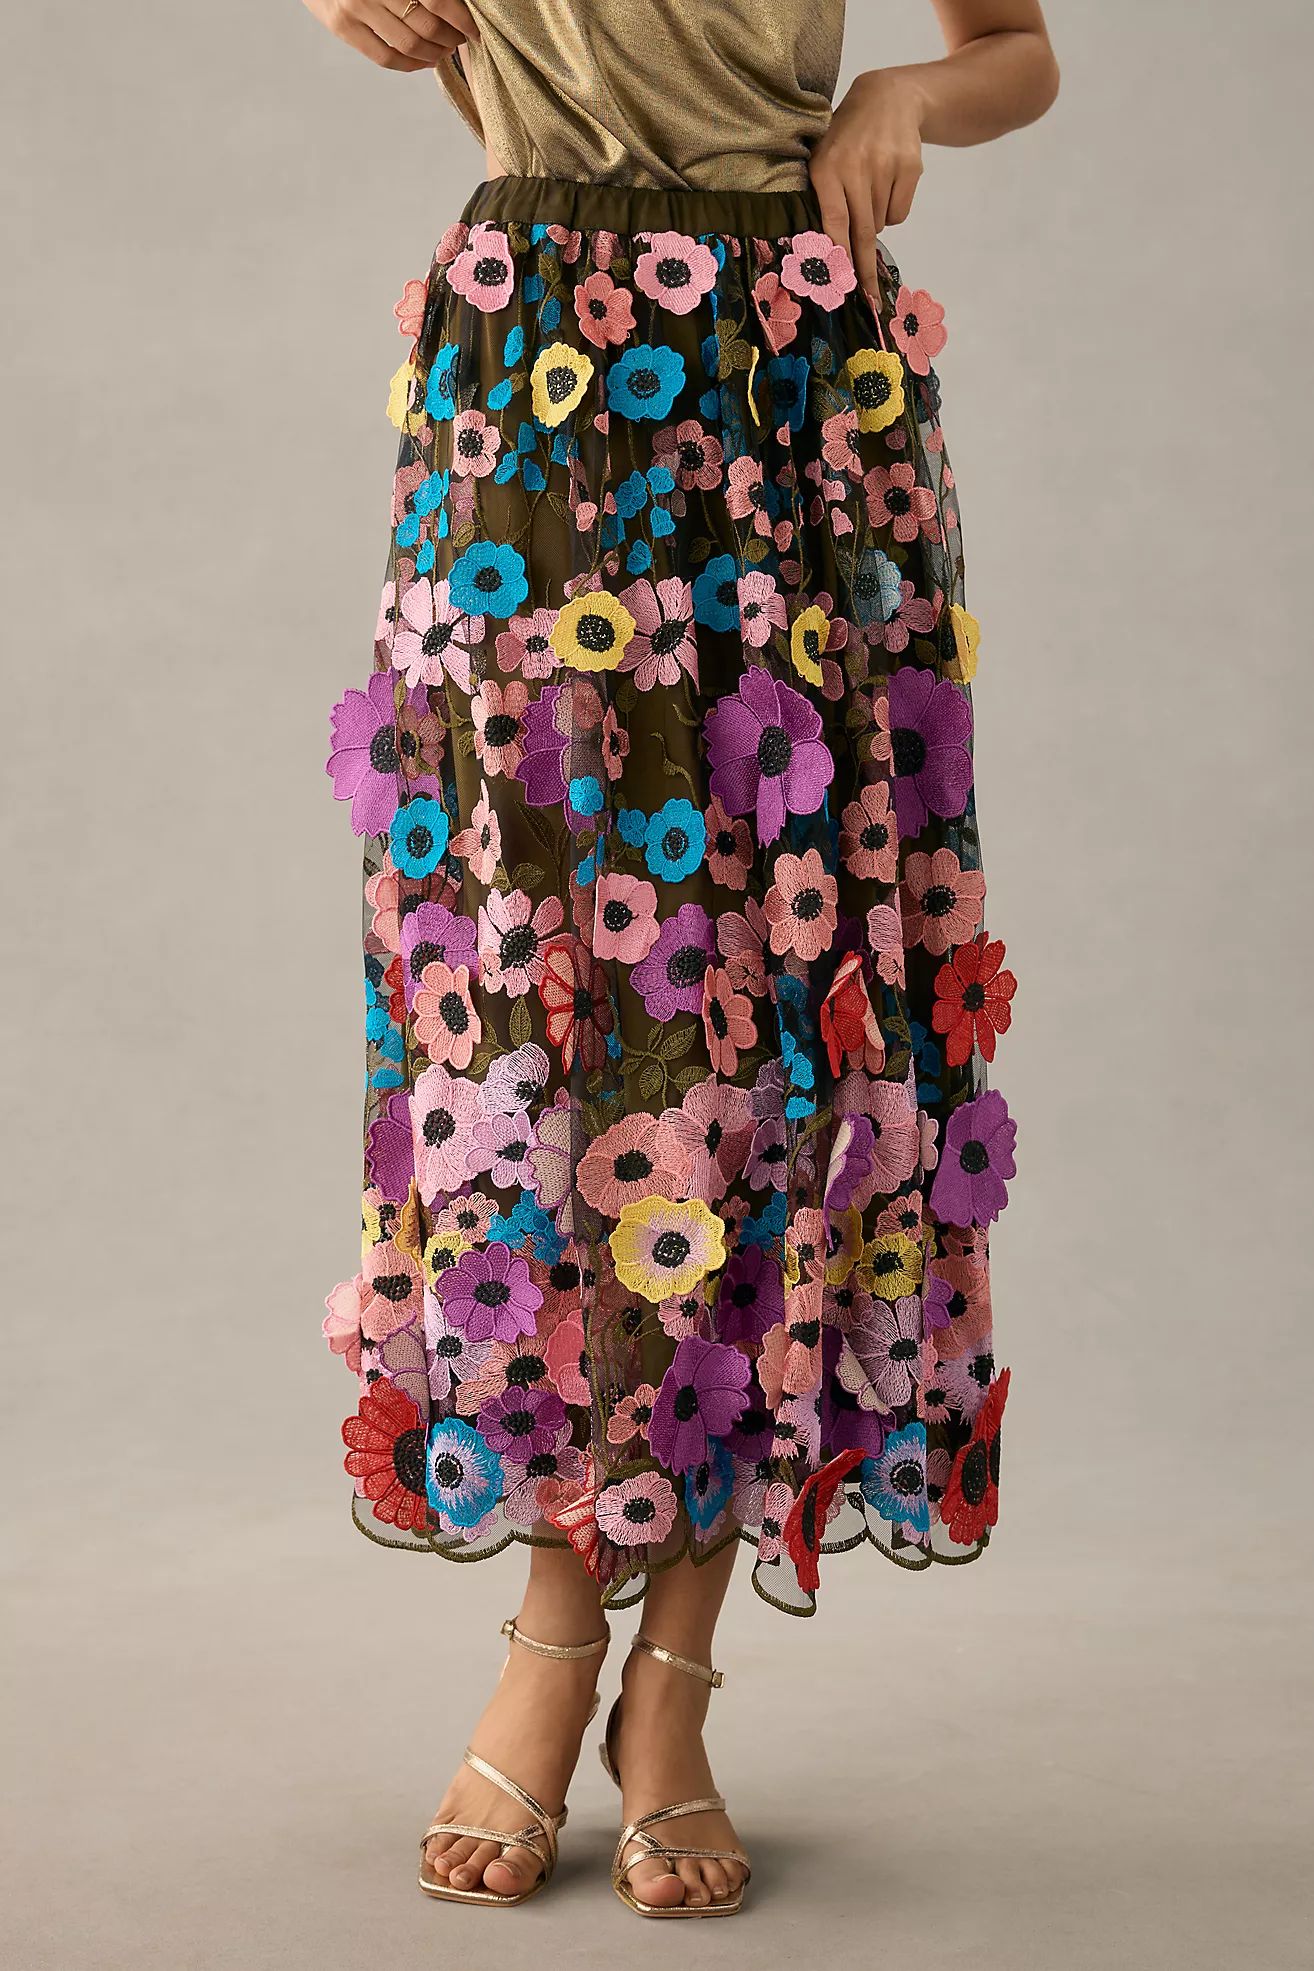 Maeve Floral Appliqué Skirt | Anthropologie (US)